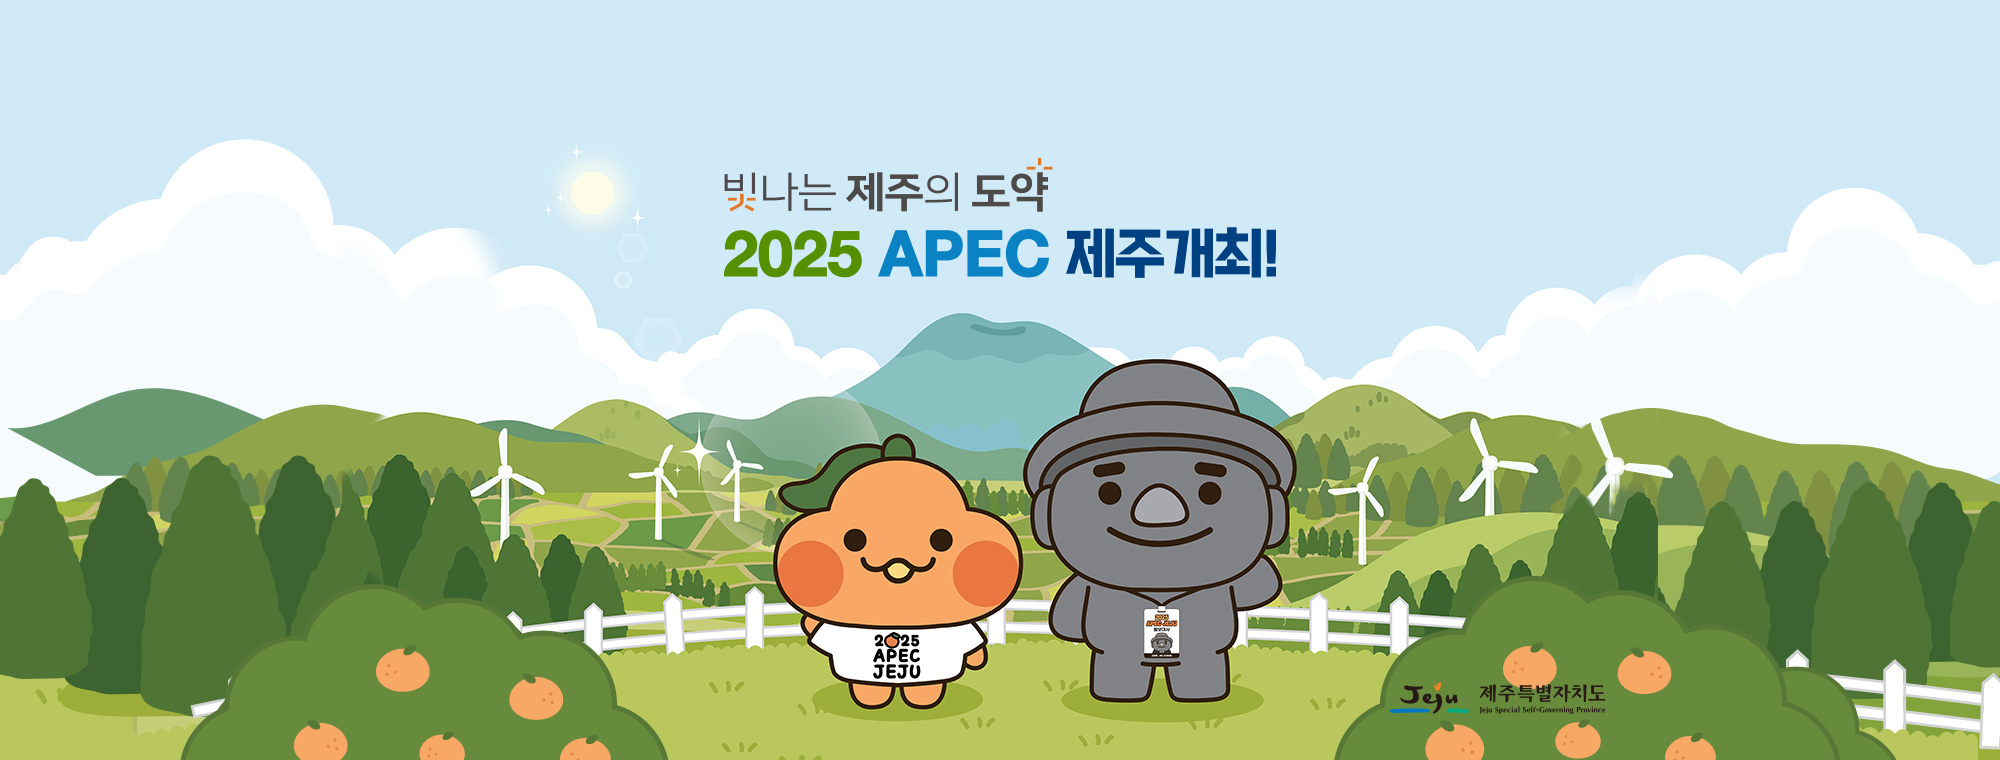 빛나는 제주의 도약. 2025 APEC JEJU 제주개최! 제주특별자치도